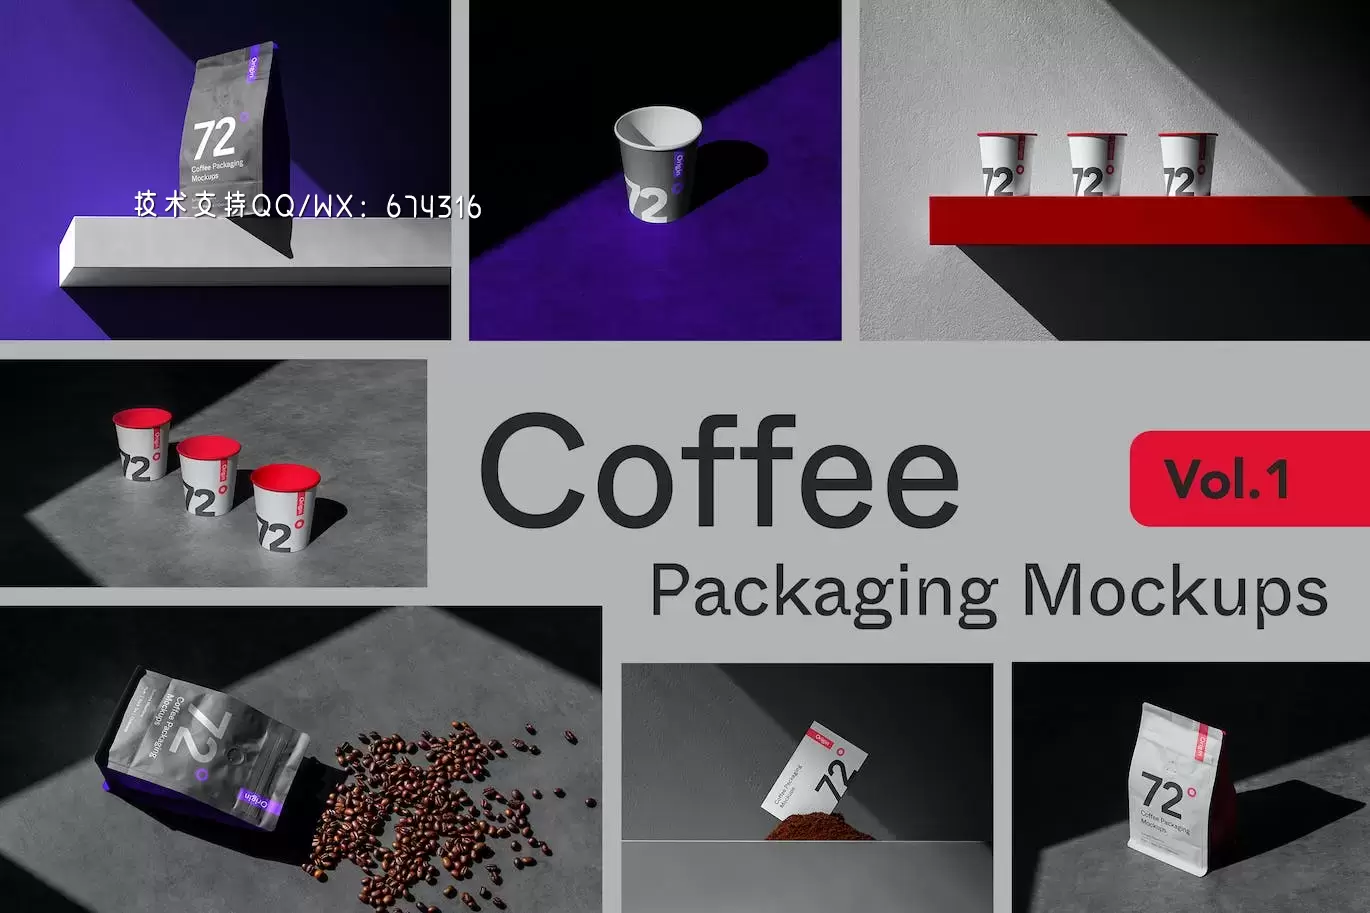 咖啡杯&袋包装设计样机模板 (PSD,JPG)免费下载